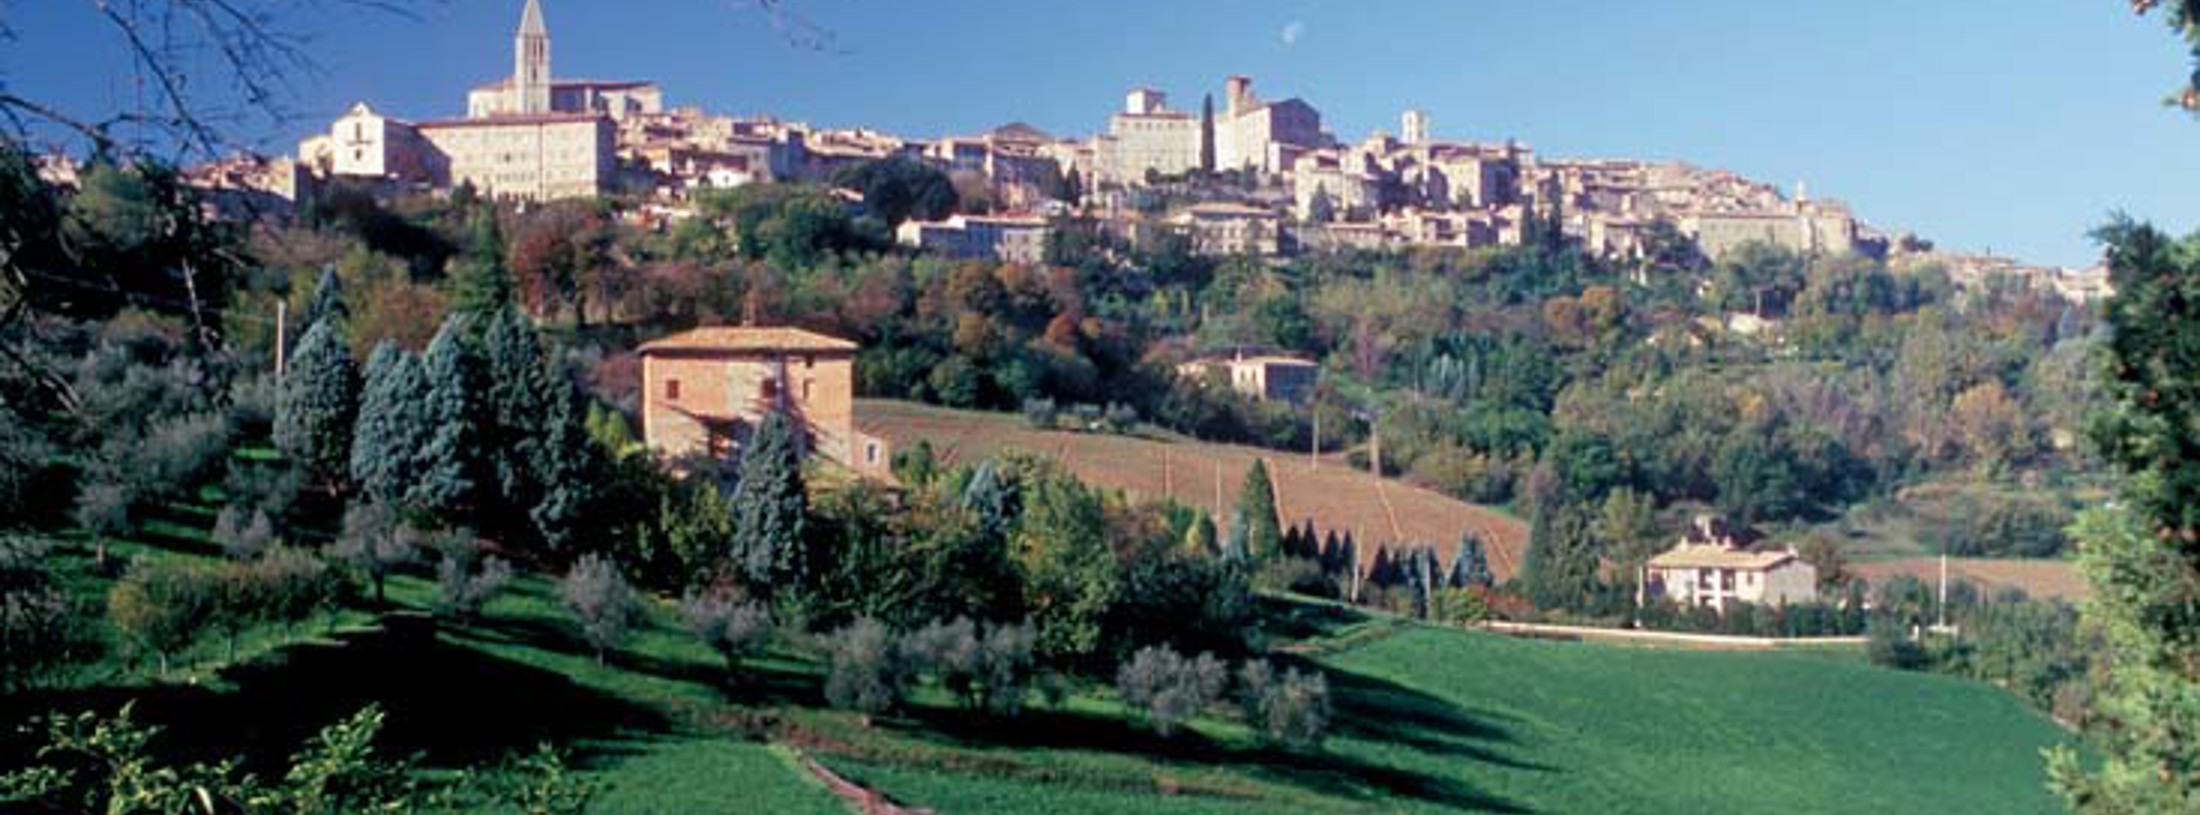 Perugia-området